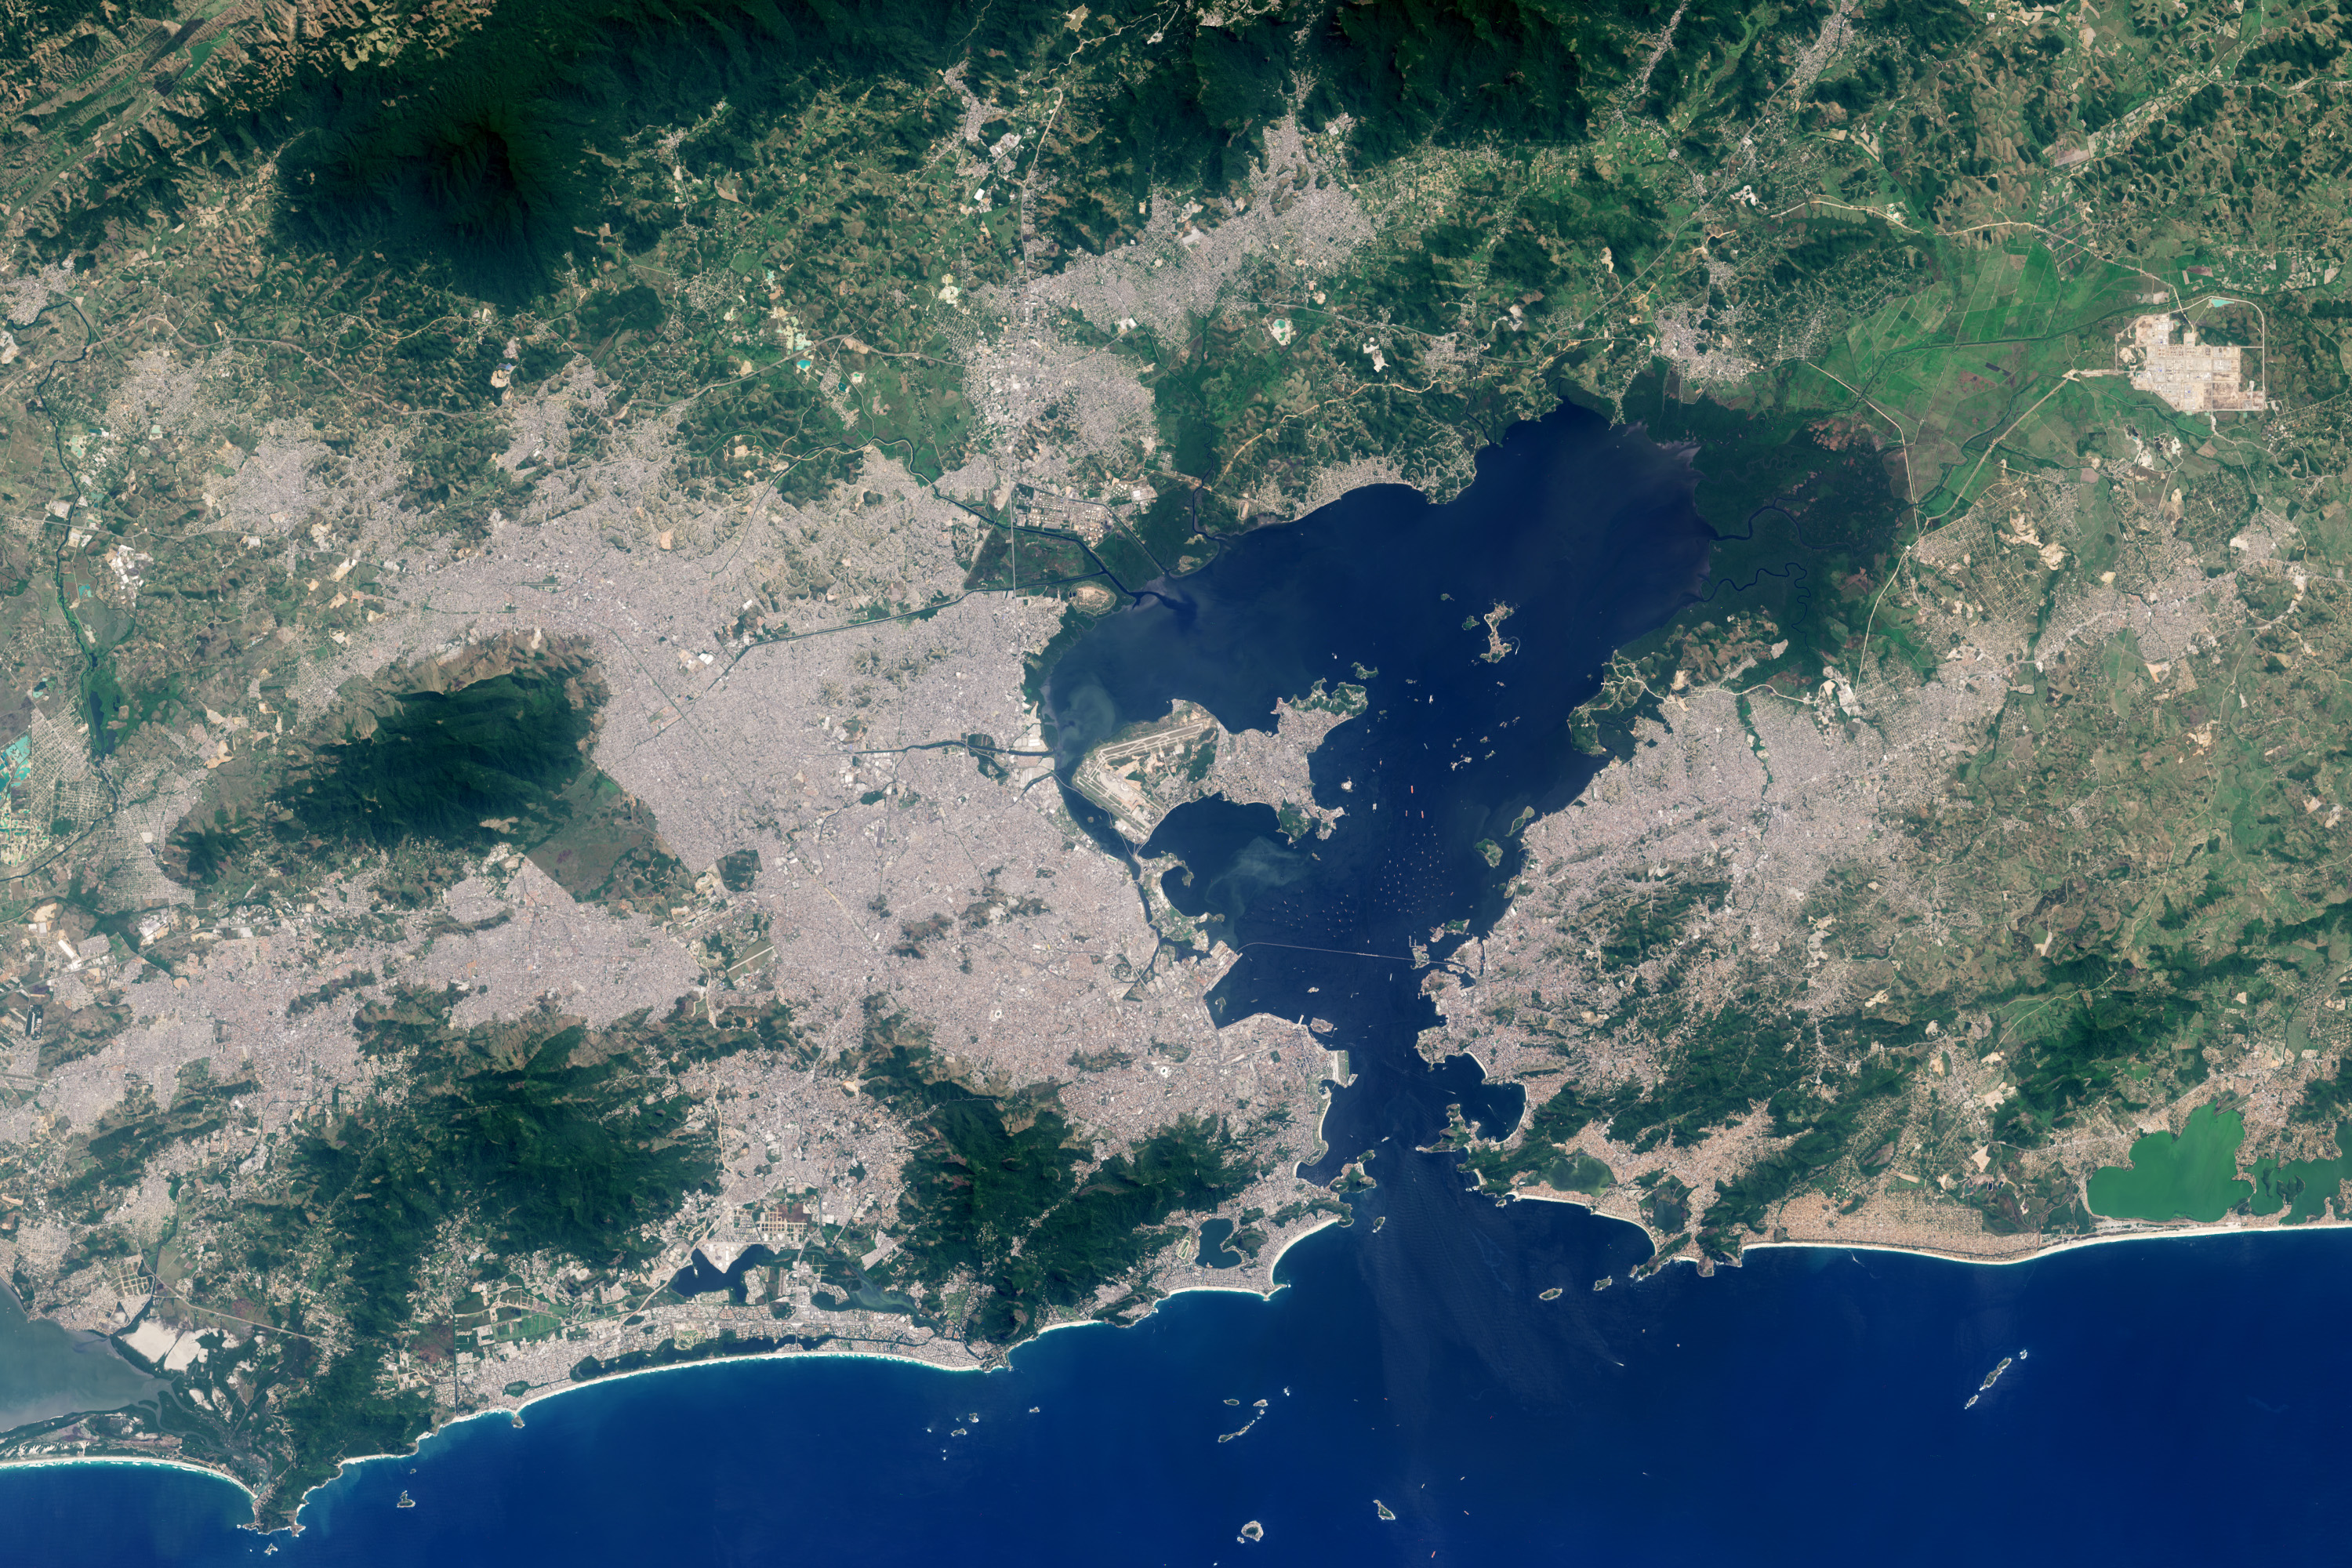 Rio de Janeiro: A Changing City  - related image preview